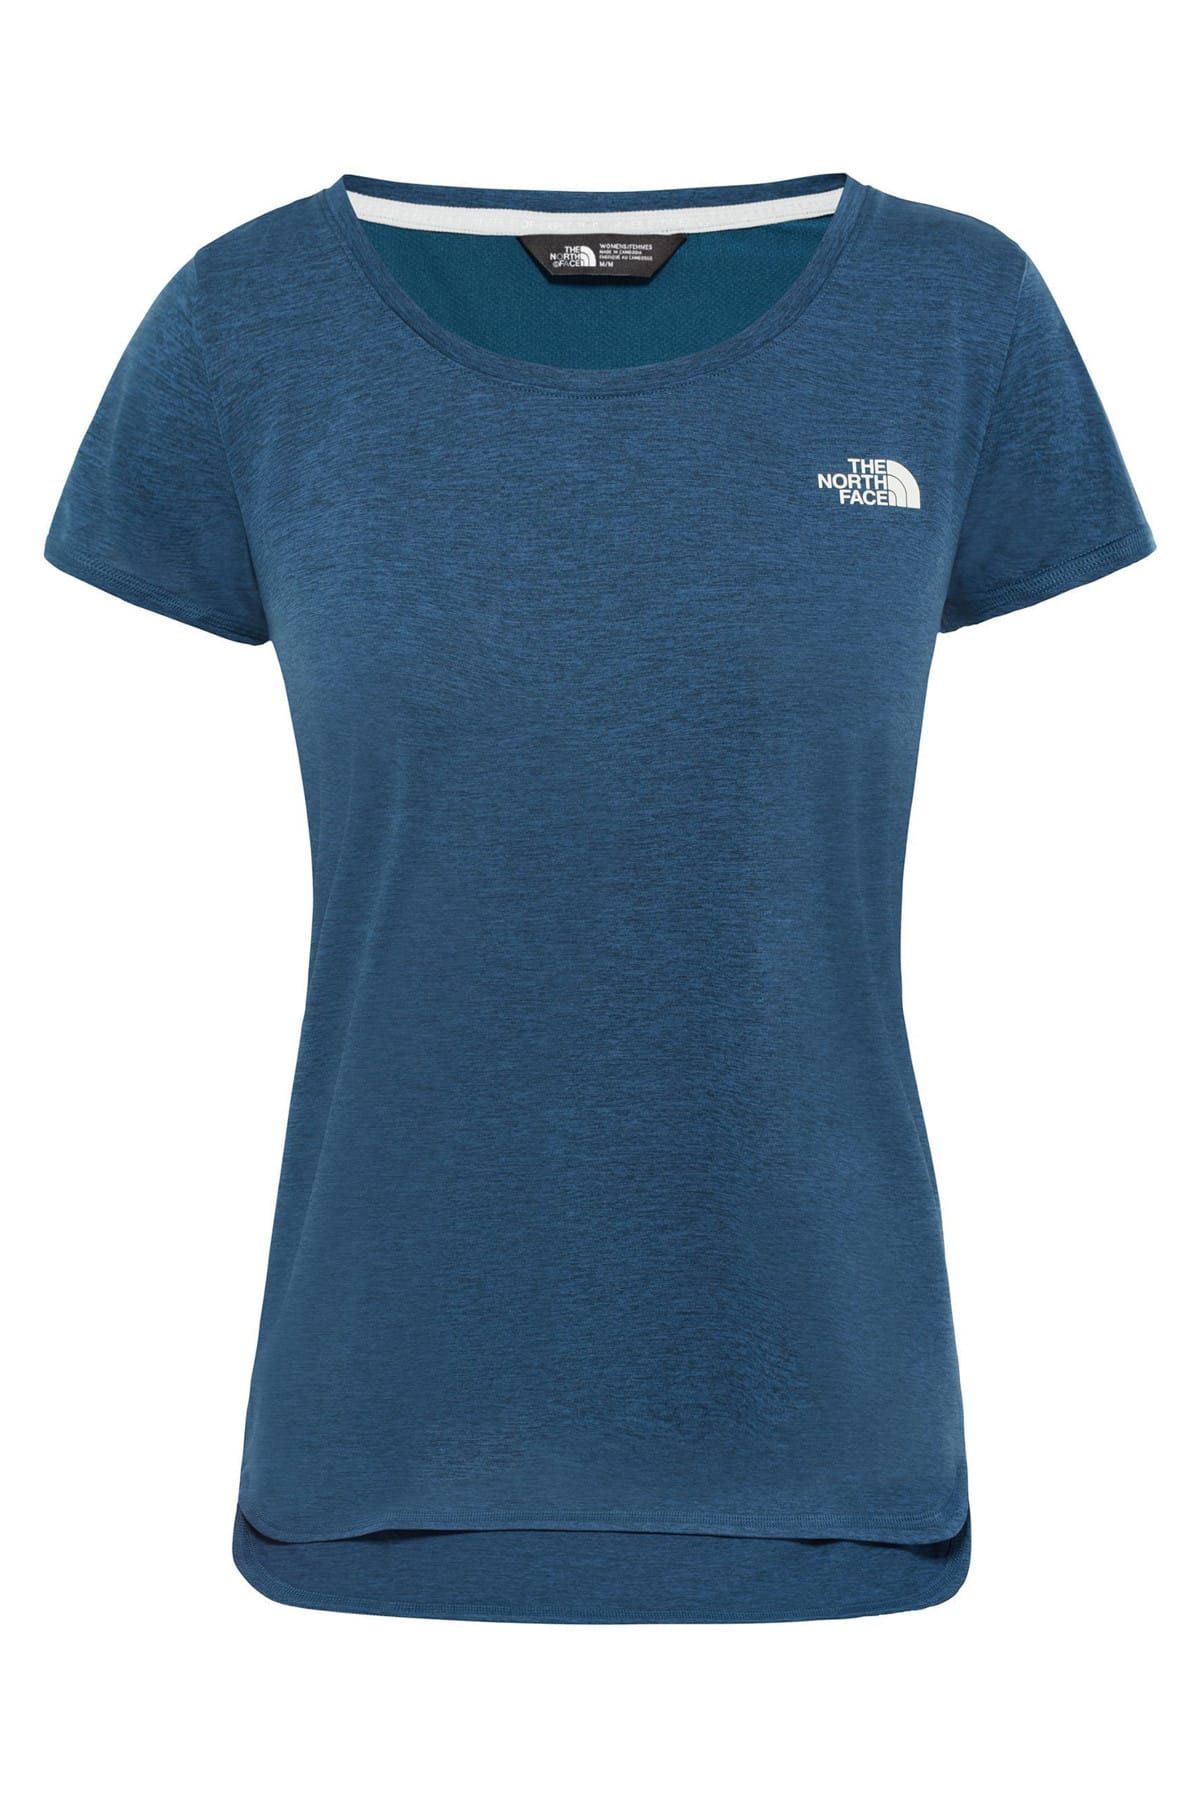 The North Face Inlux Top Kadın T-Shirt Mavi